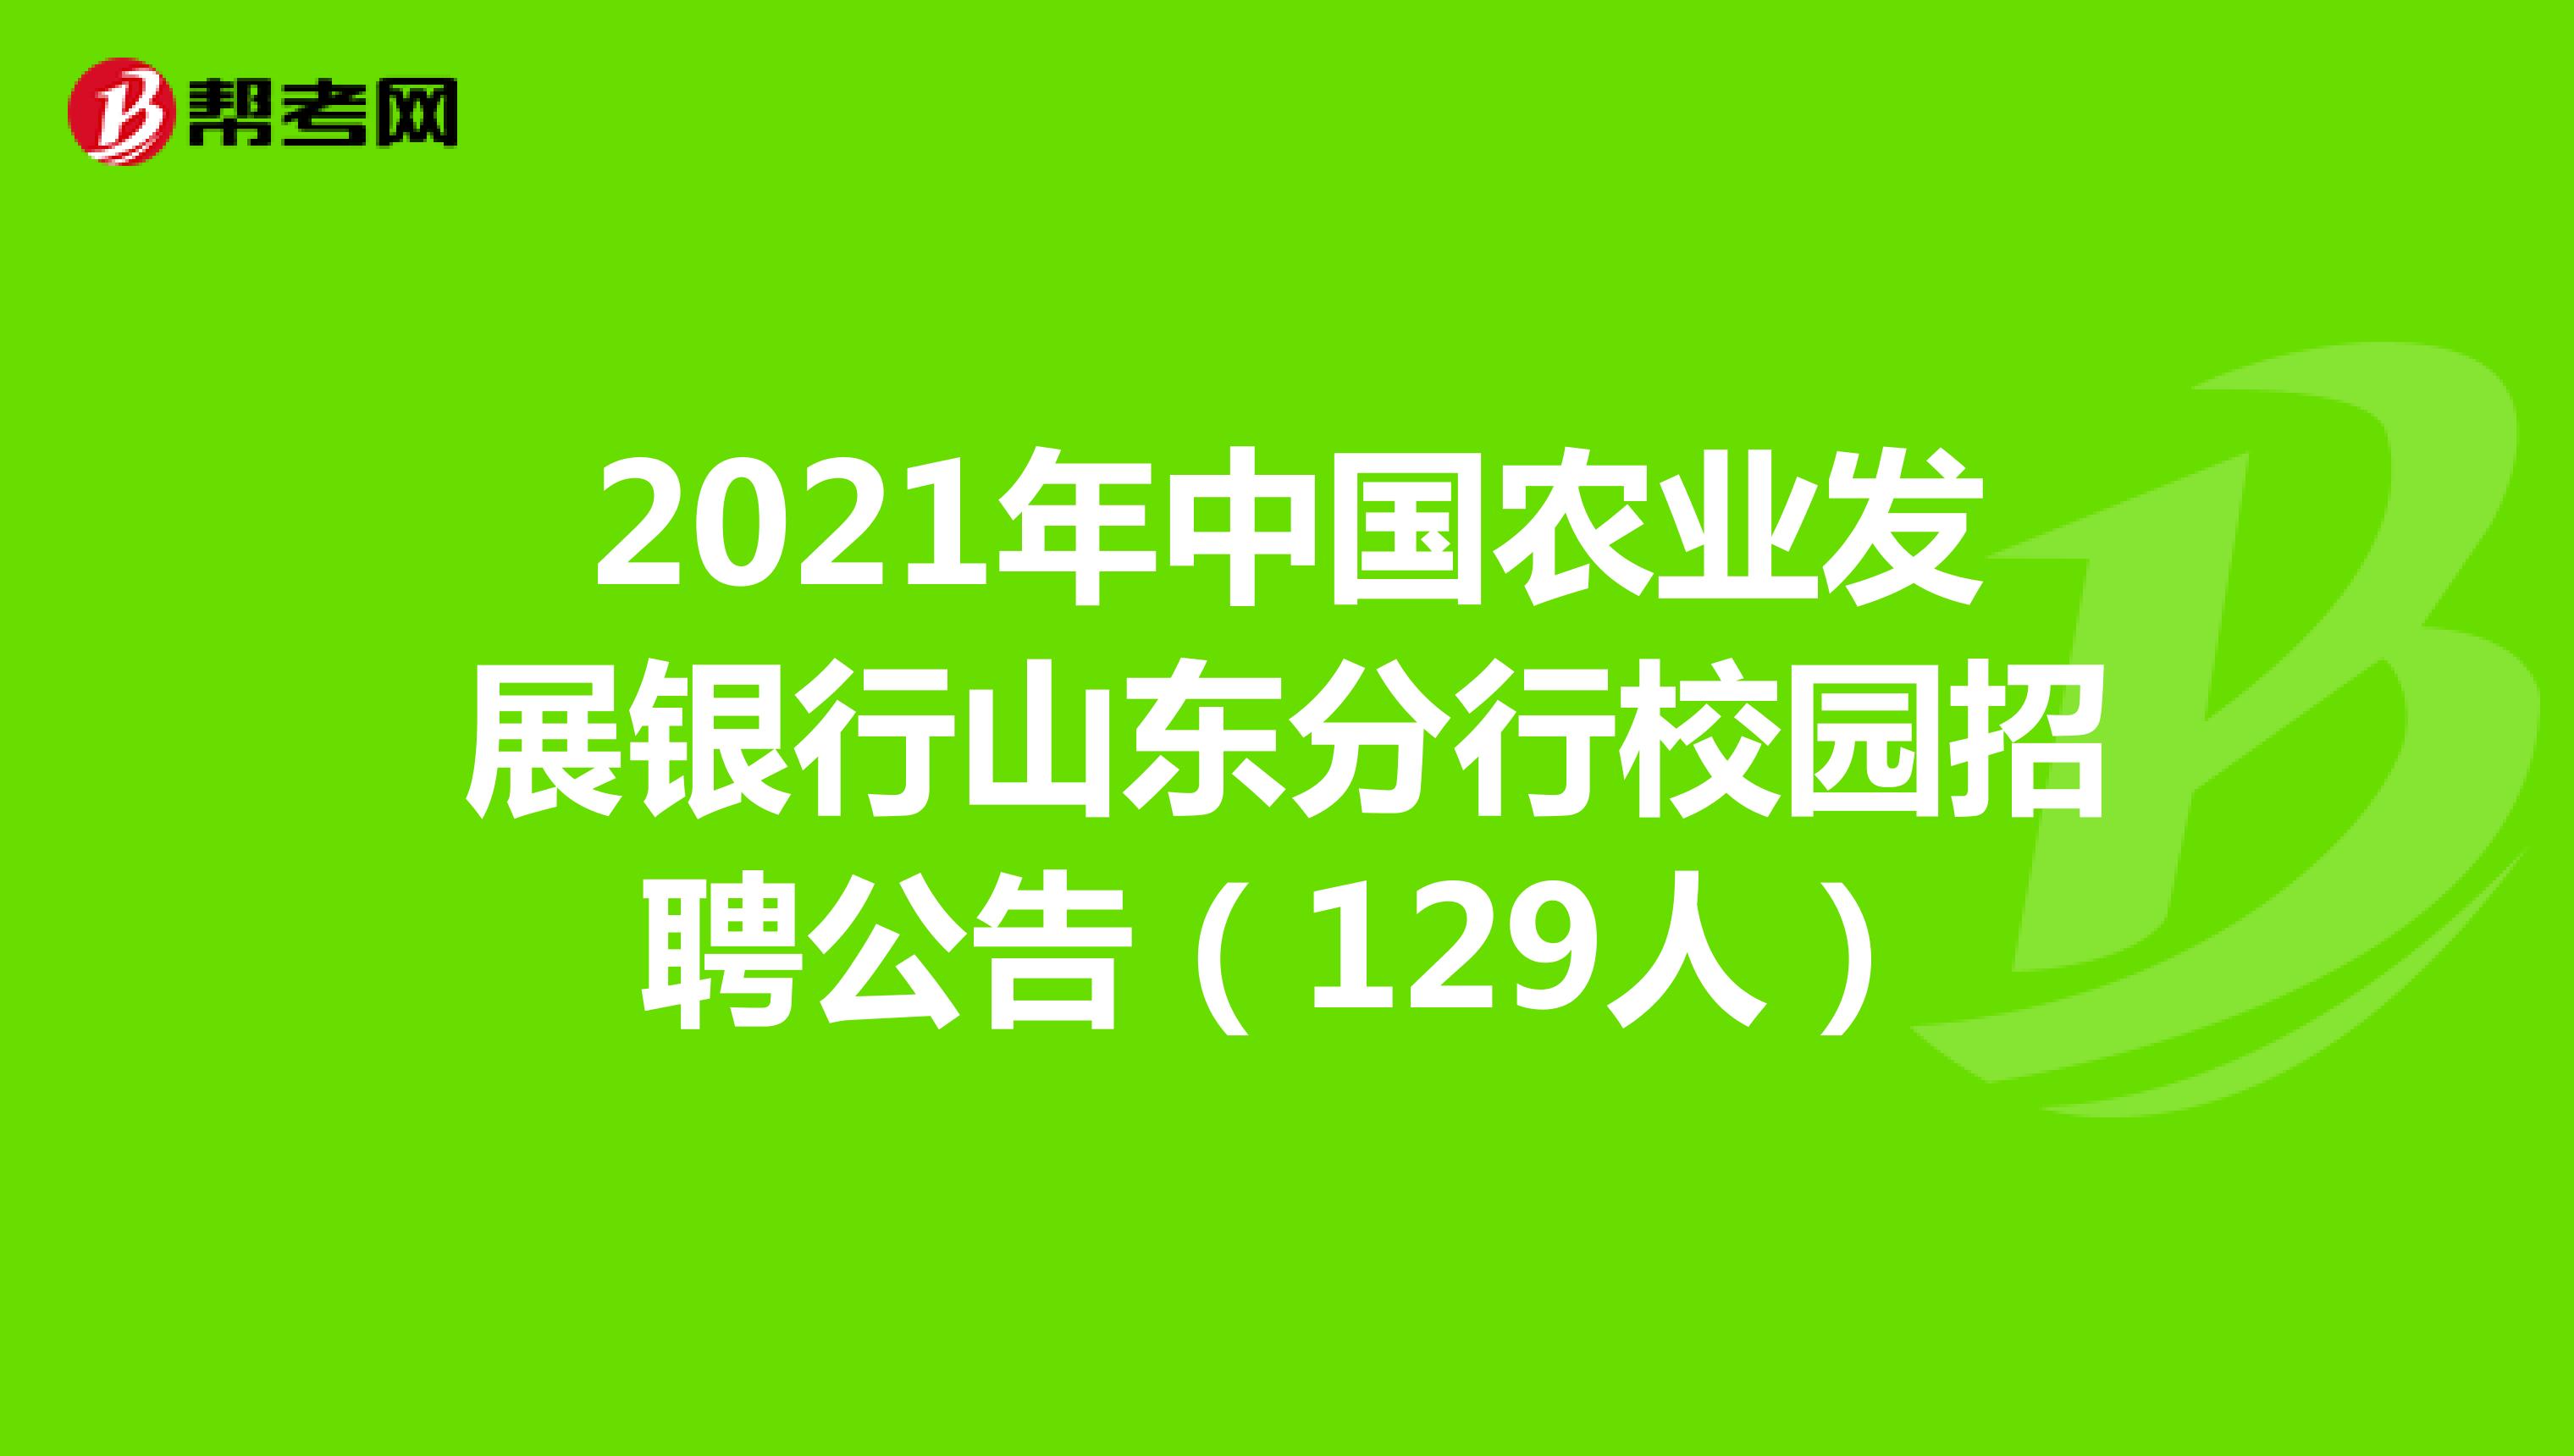 2021年中国农业发展银行山东分行校园招聘公告（129人）